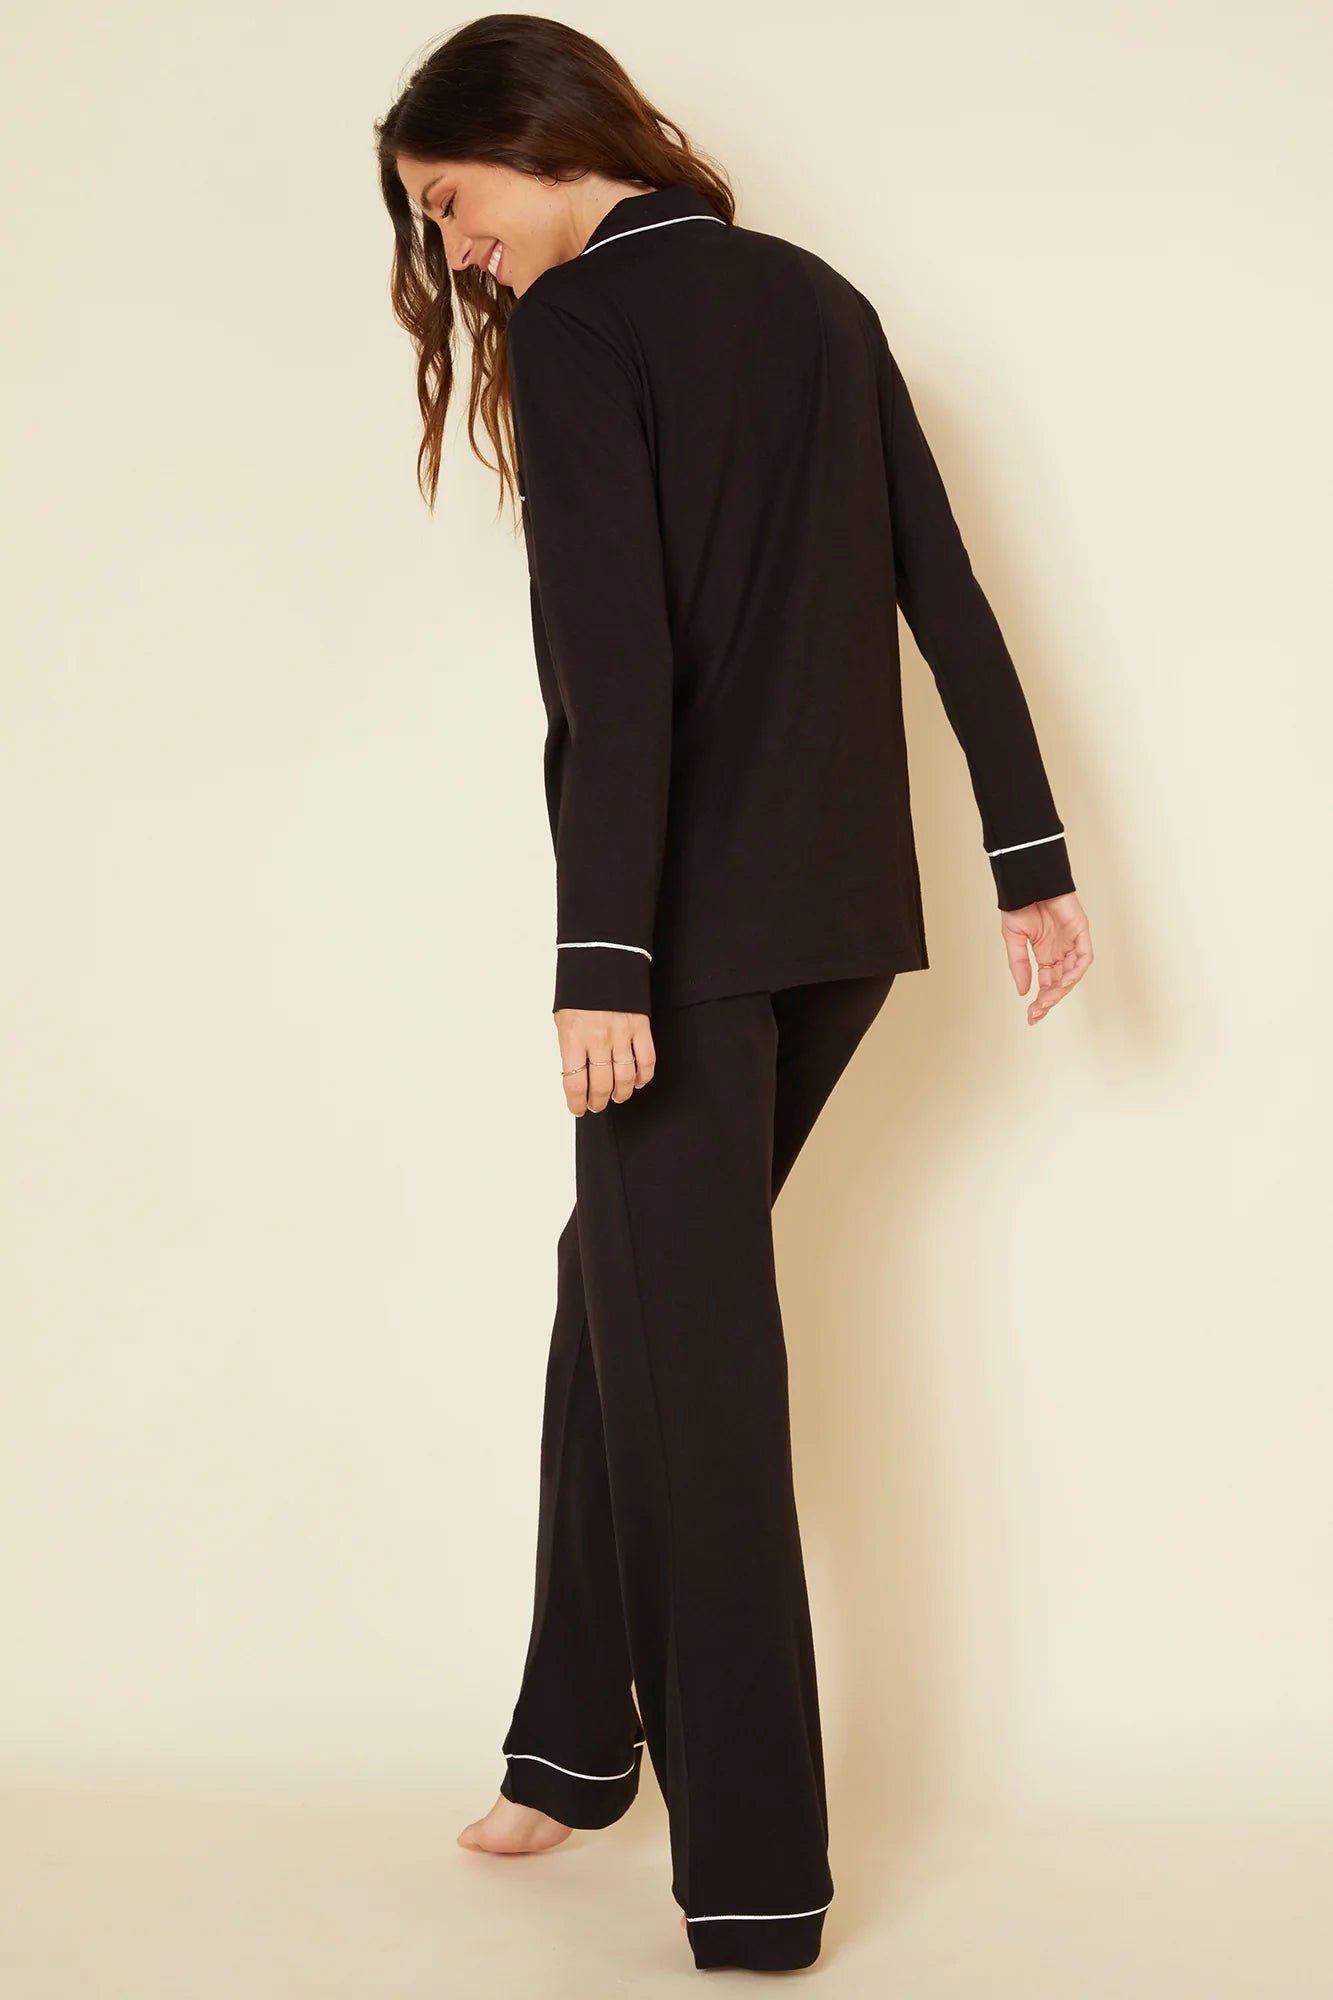 Cosabella Bella Long Sleeve Top and Pant Pajama Set Black/Ivory